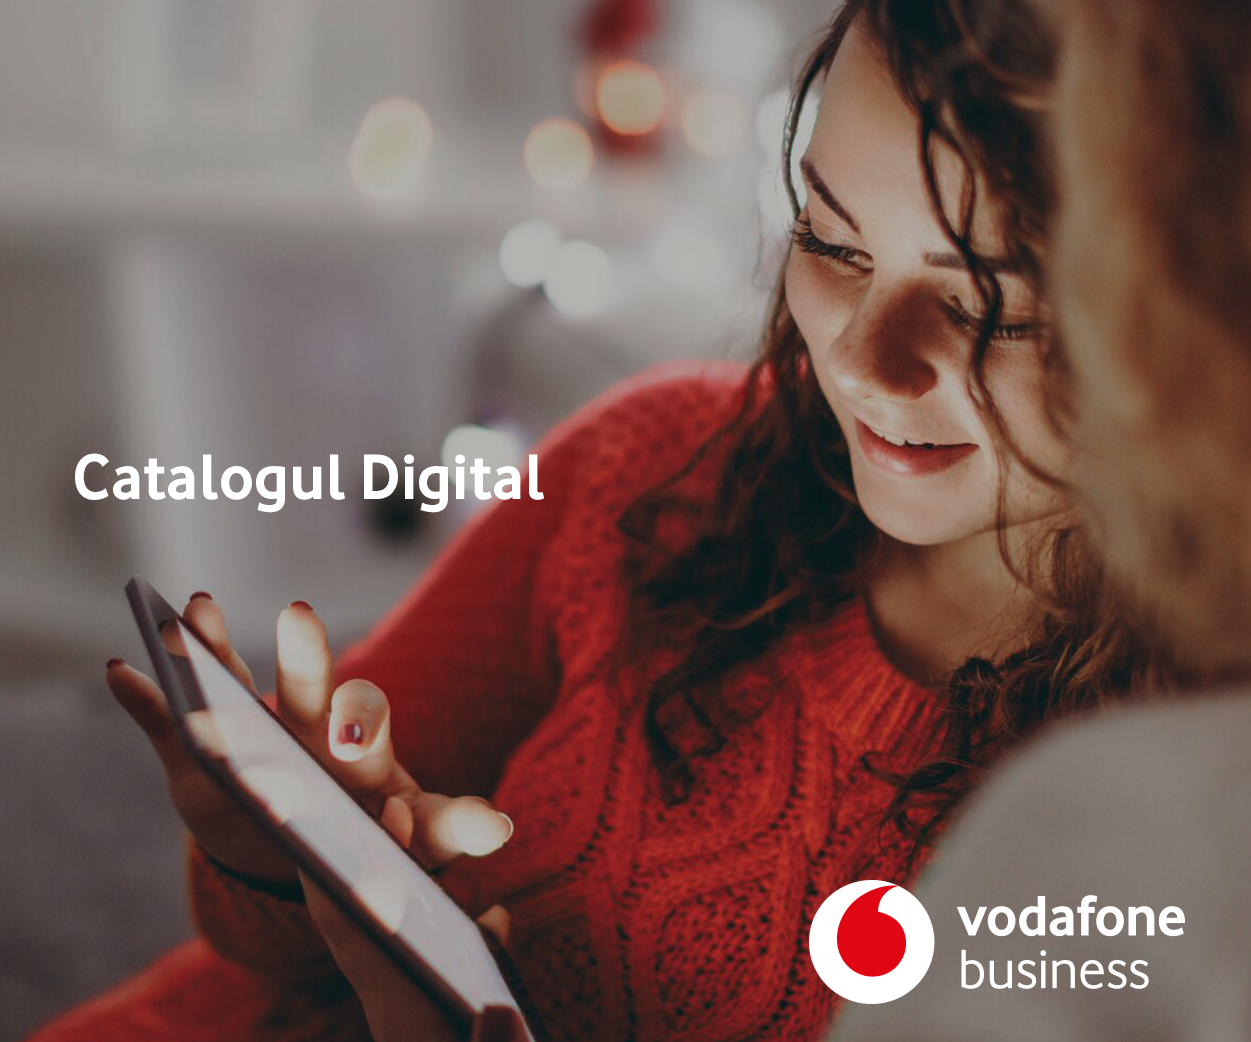 Vodafone România în parteneriat cu AdServio oferă o experiență de educație relevantă și modernă prin Catalogul Digital